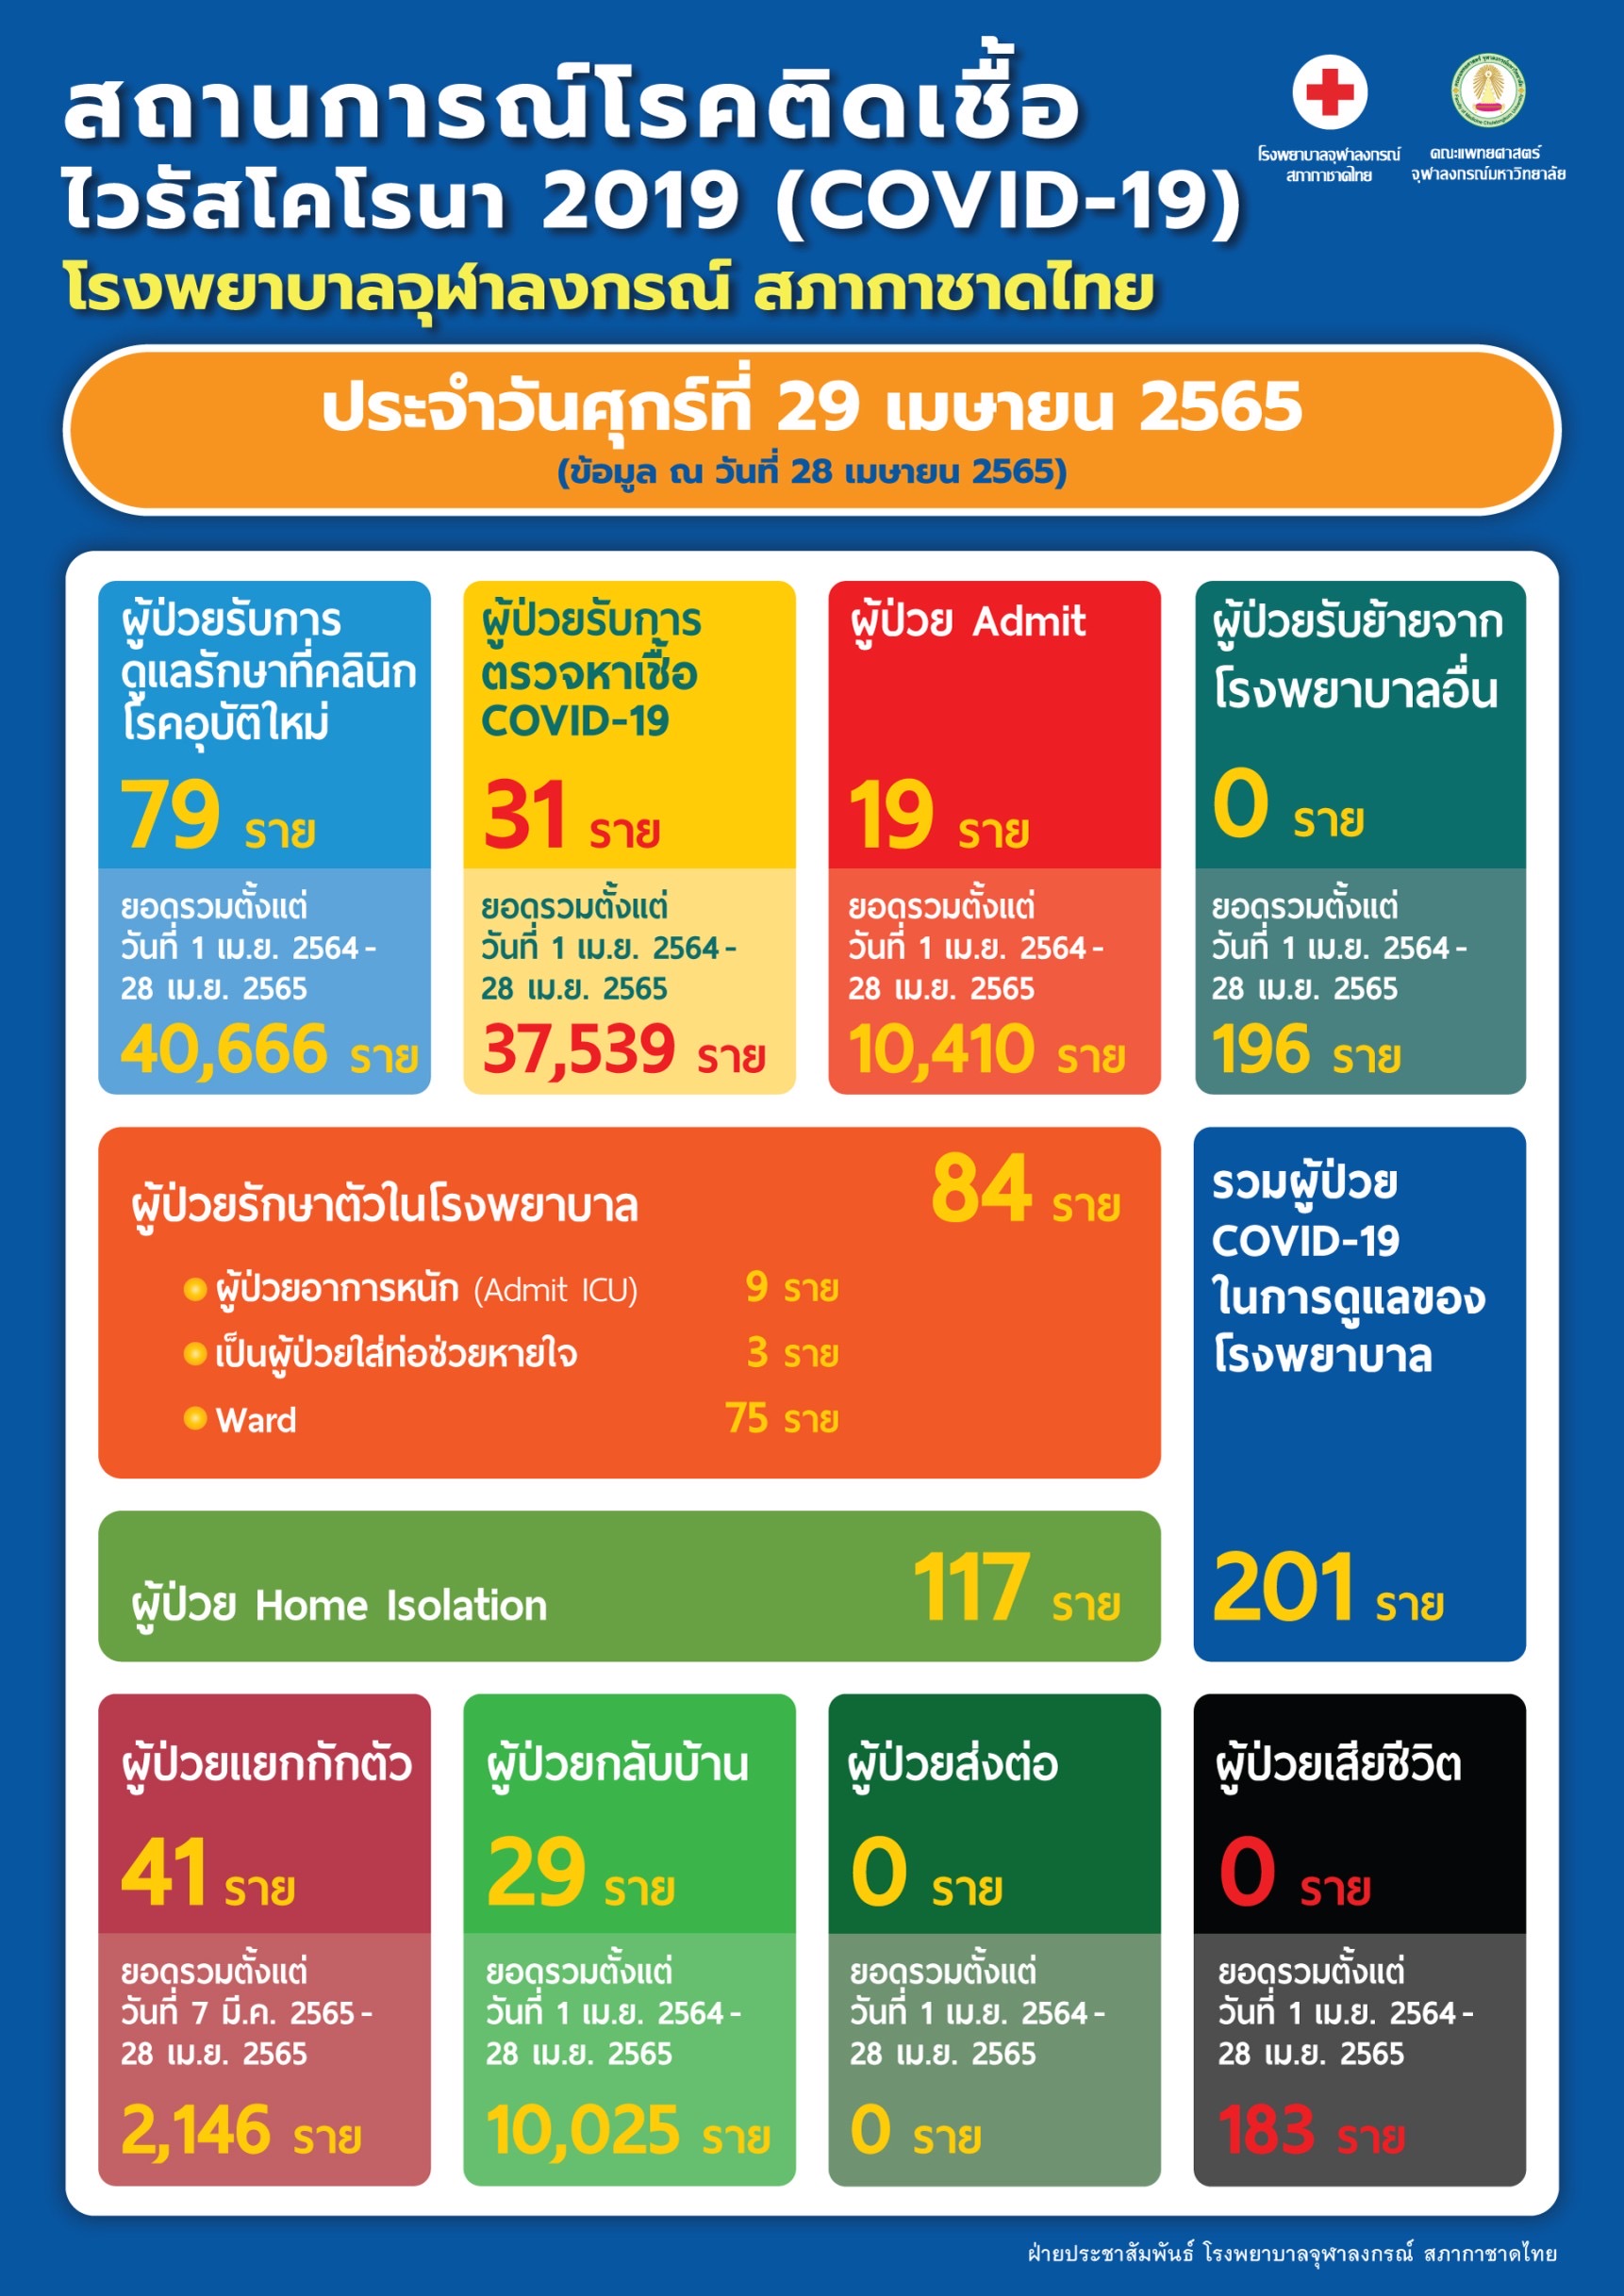 สถานการณ์โรคติดเชื้อ ไวรัสโคโรนา 2019 (COVID-19) โรงพยาบาลจุฬาลงกรณ์ สภากาชาดไทย ประจำวันศุกร์ที่ 29 เมษายน 2565